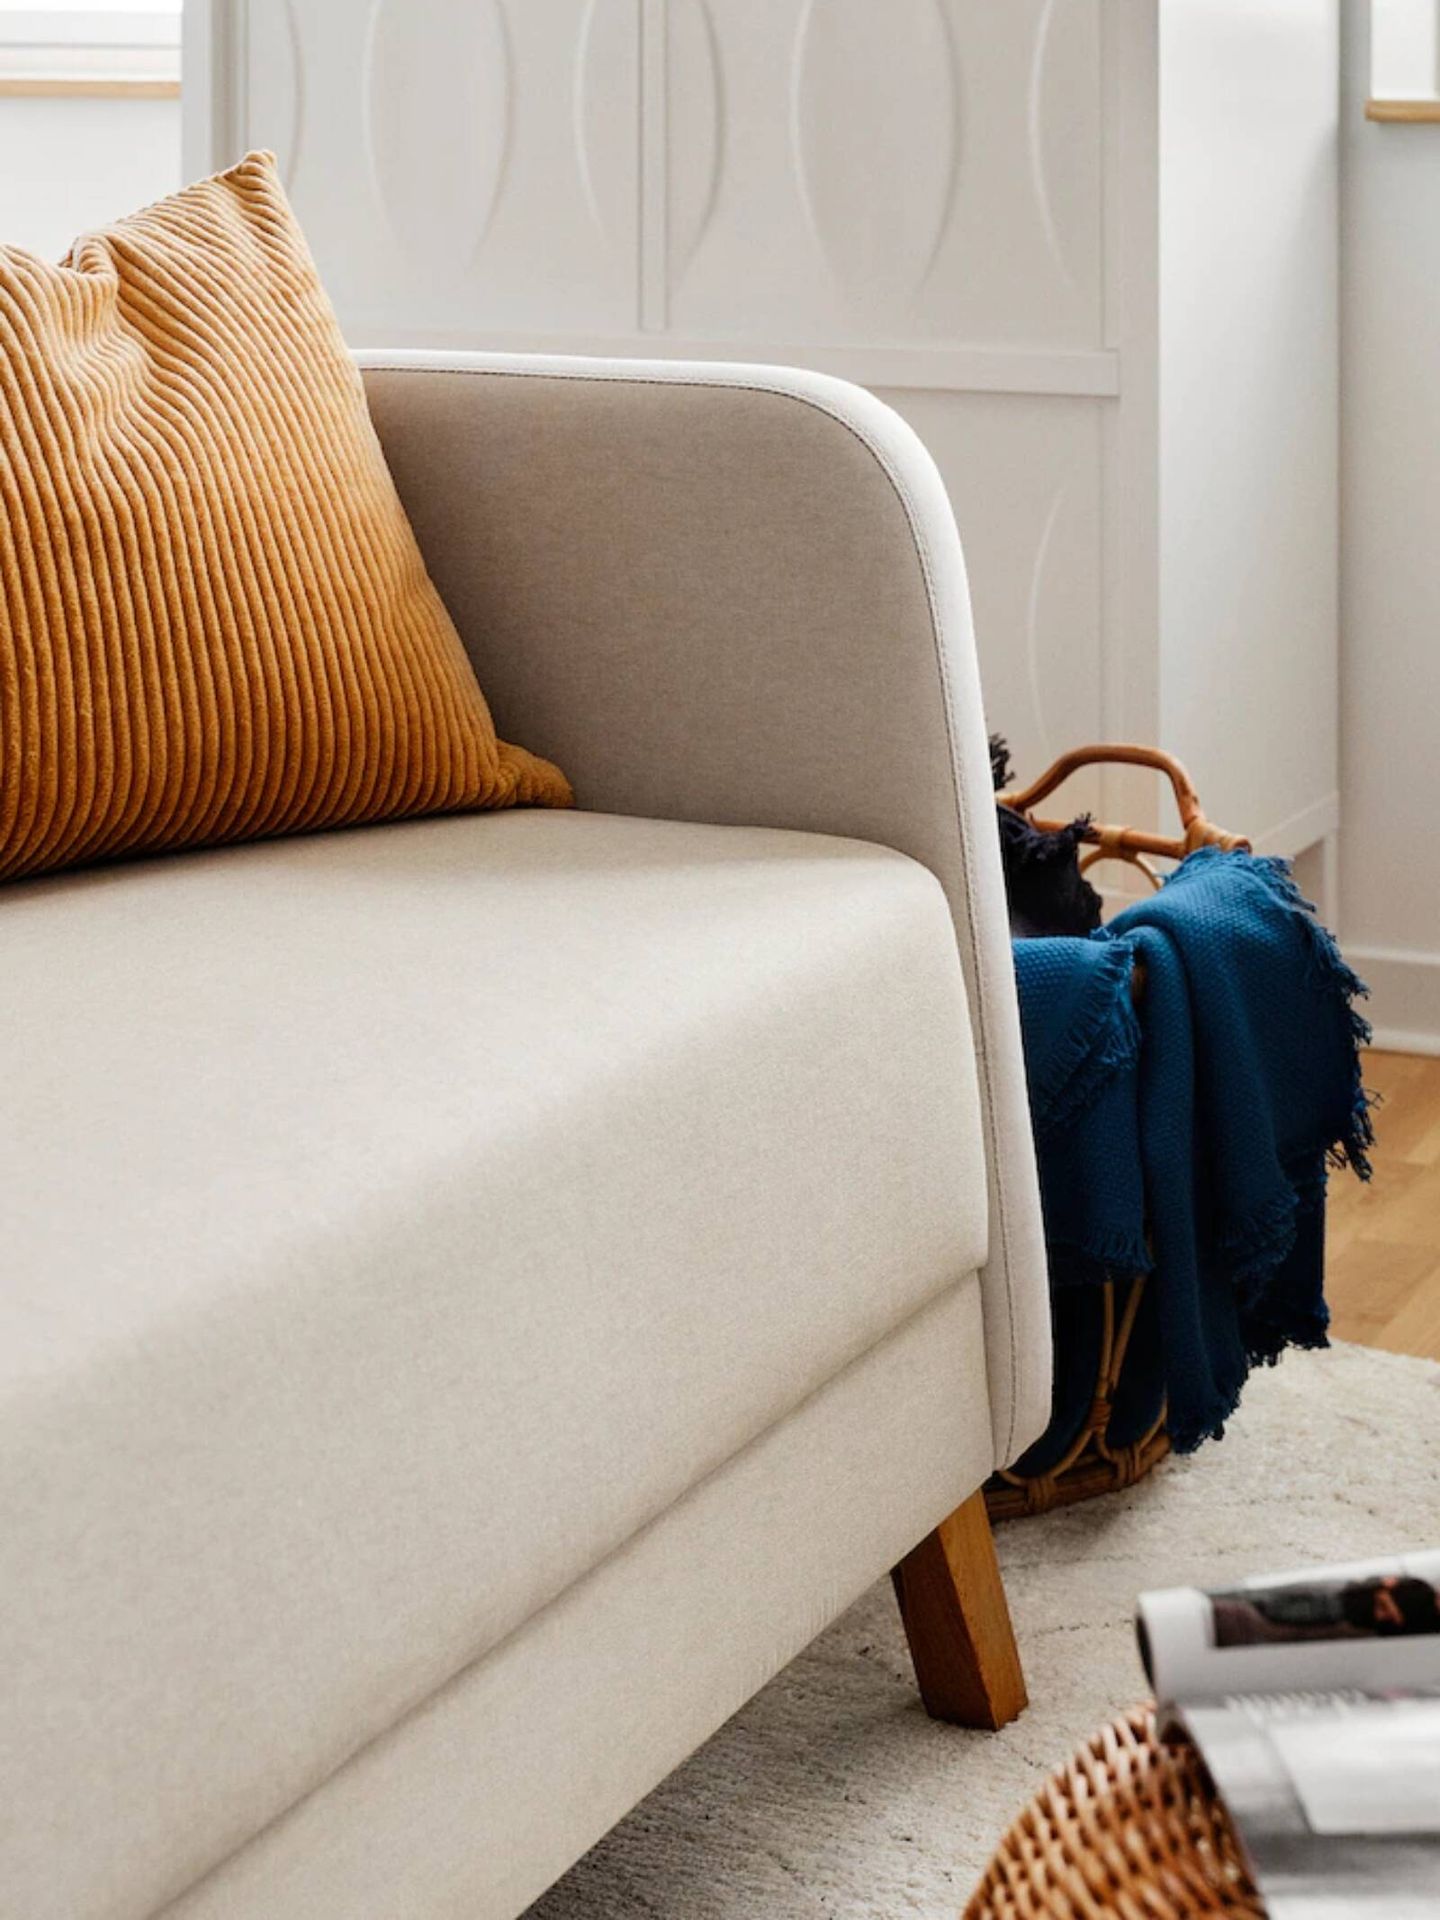 El nuevo sofá de Ikea, el mueble ideal para casas y salones pequeños. (Cortesía)